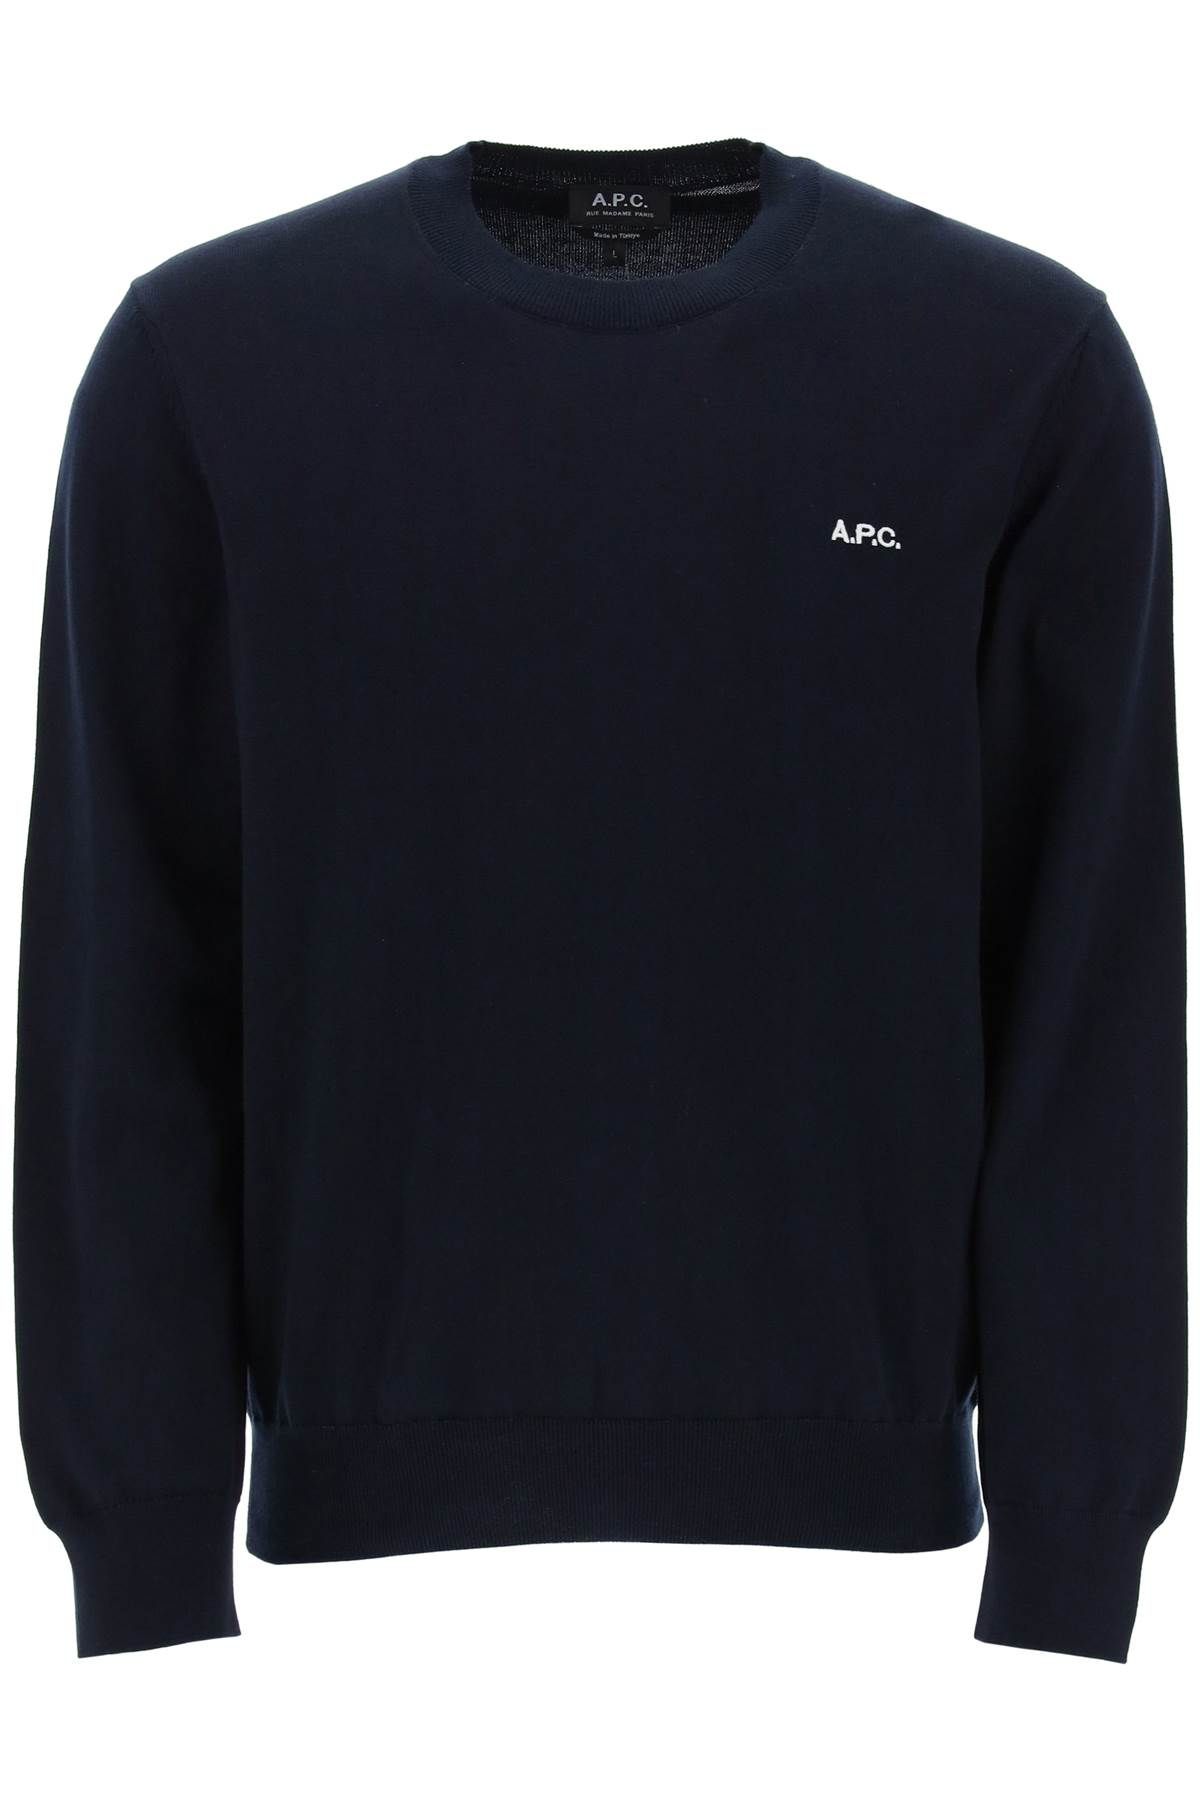 Apc Sweater A.p.c. Men Color Blue